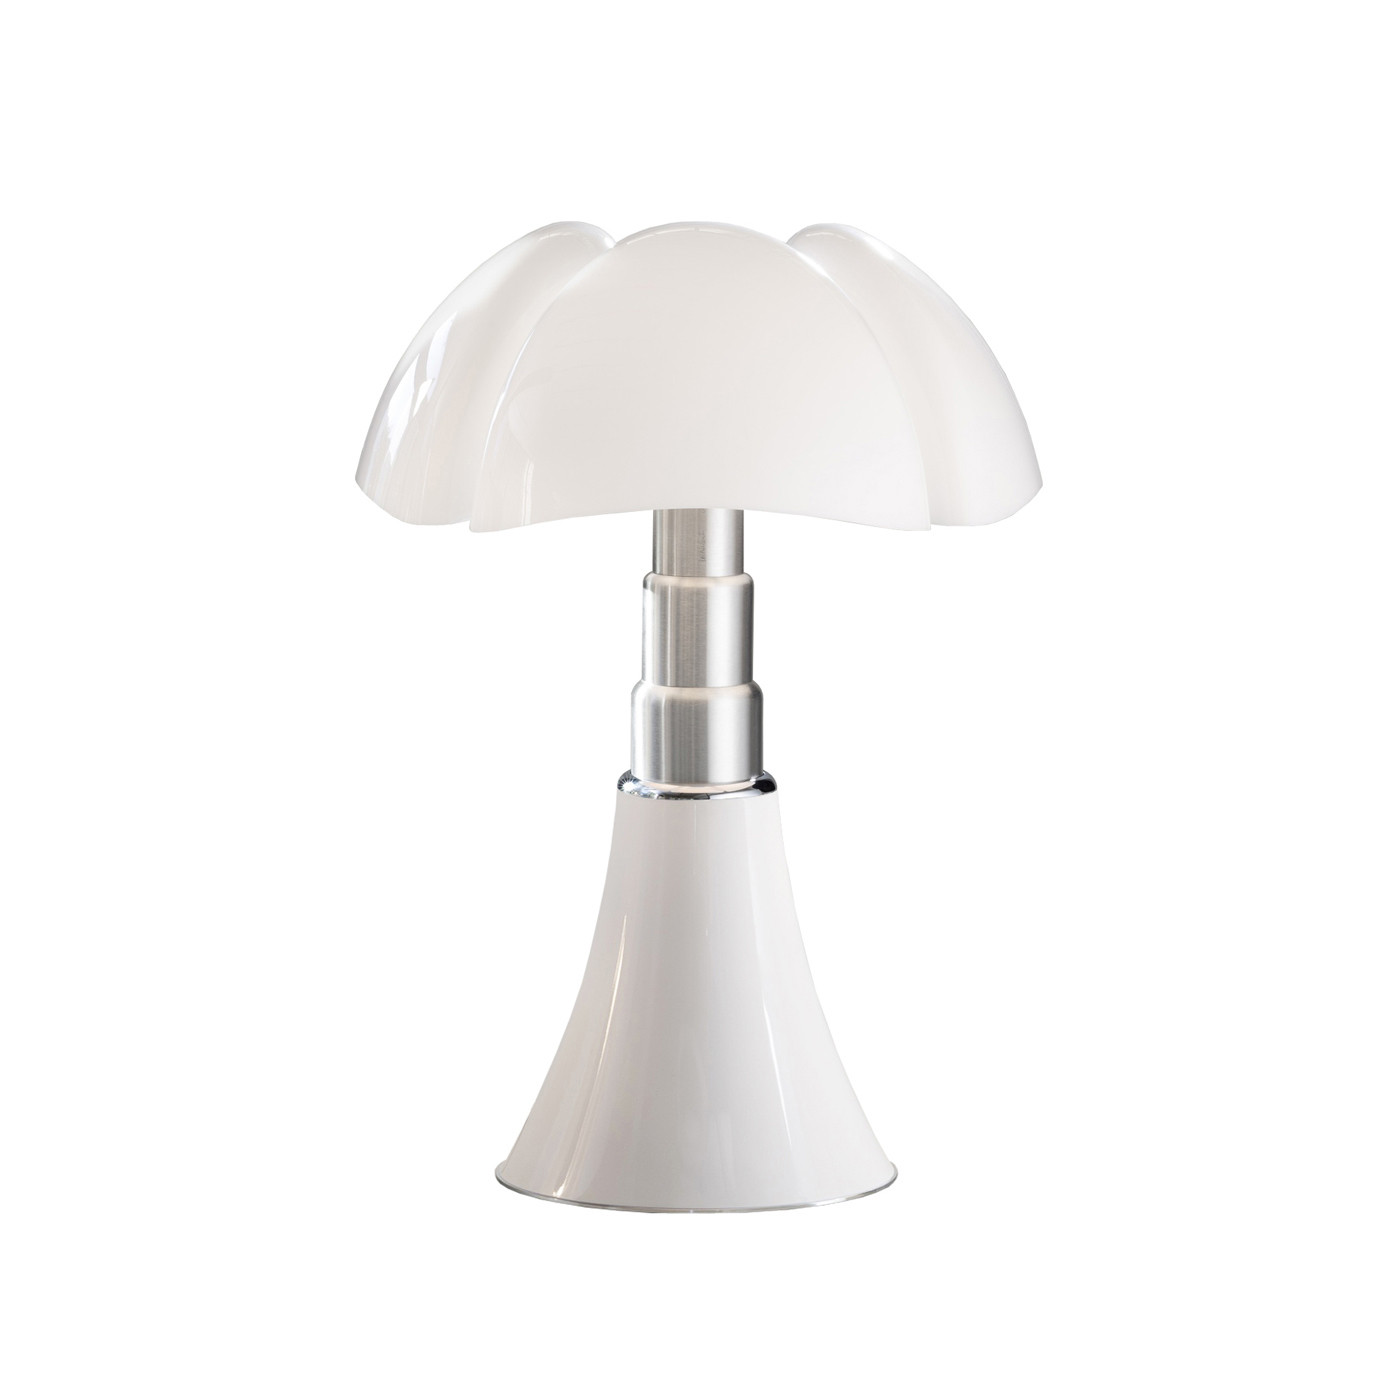 Martinelli Luce, Lampe Pipistrello, Blanc, Classique 86 cm